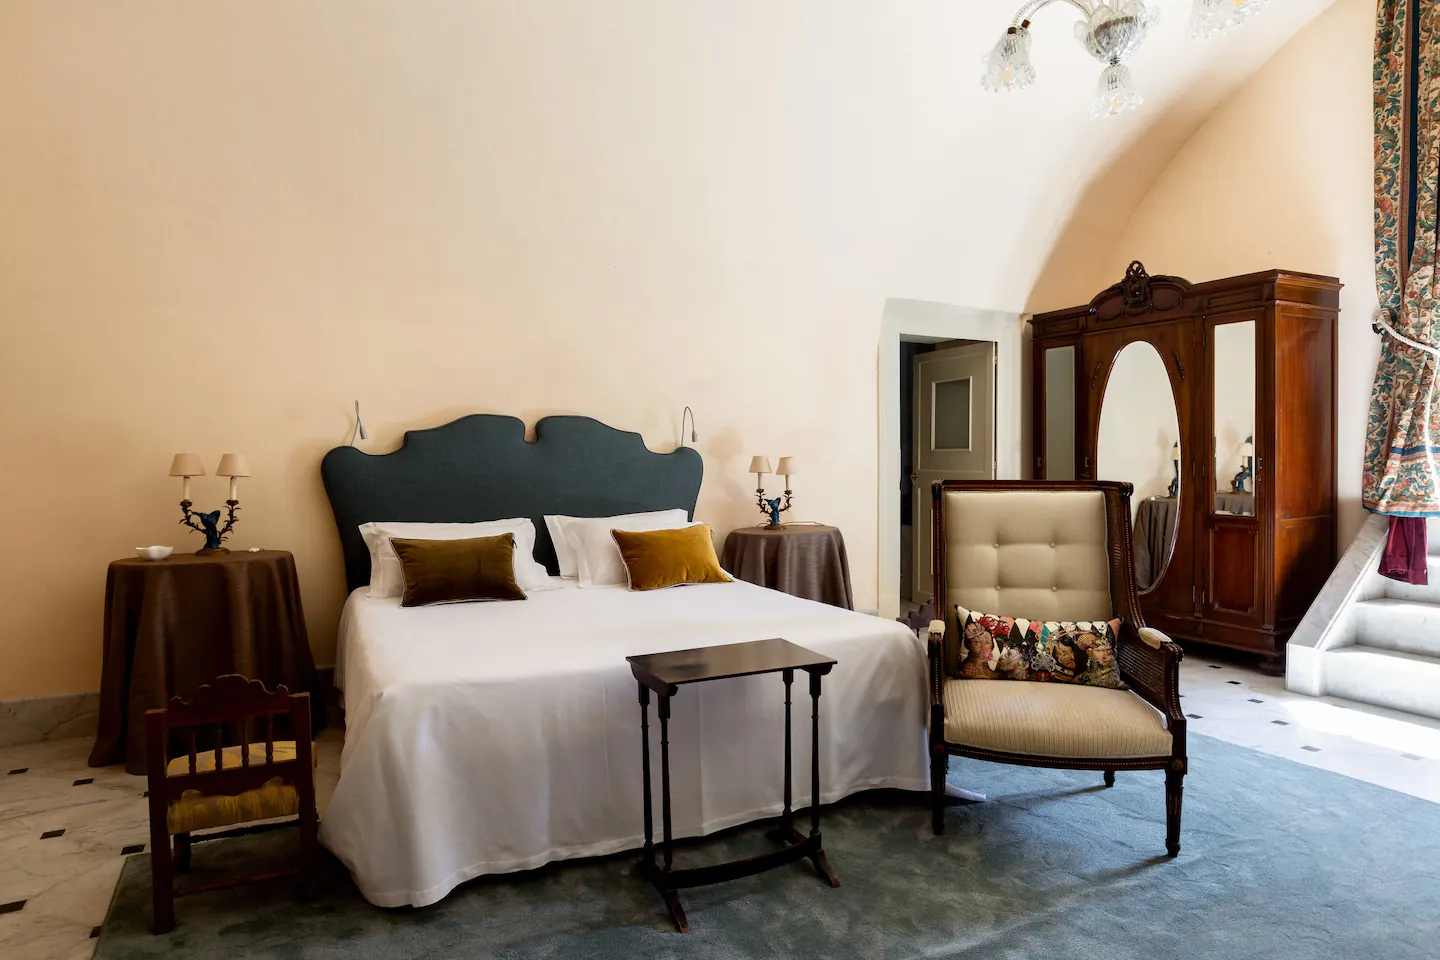 Вилла Tasca в Палермо на Сицилии, спальня